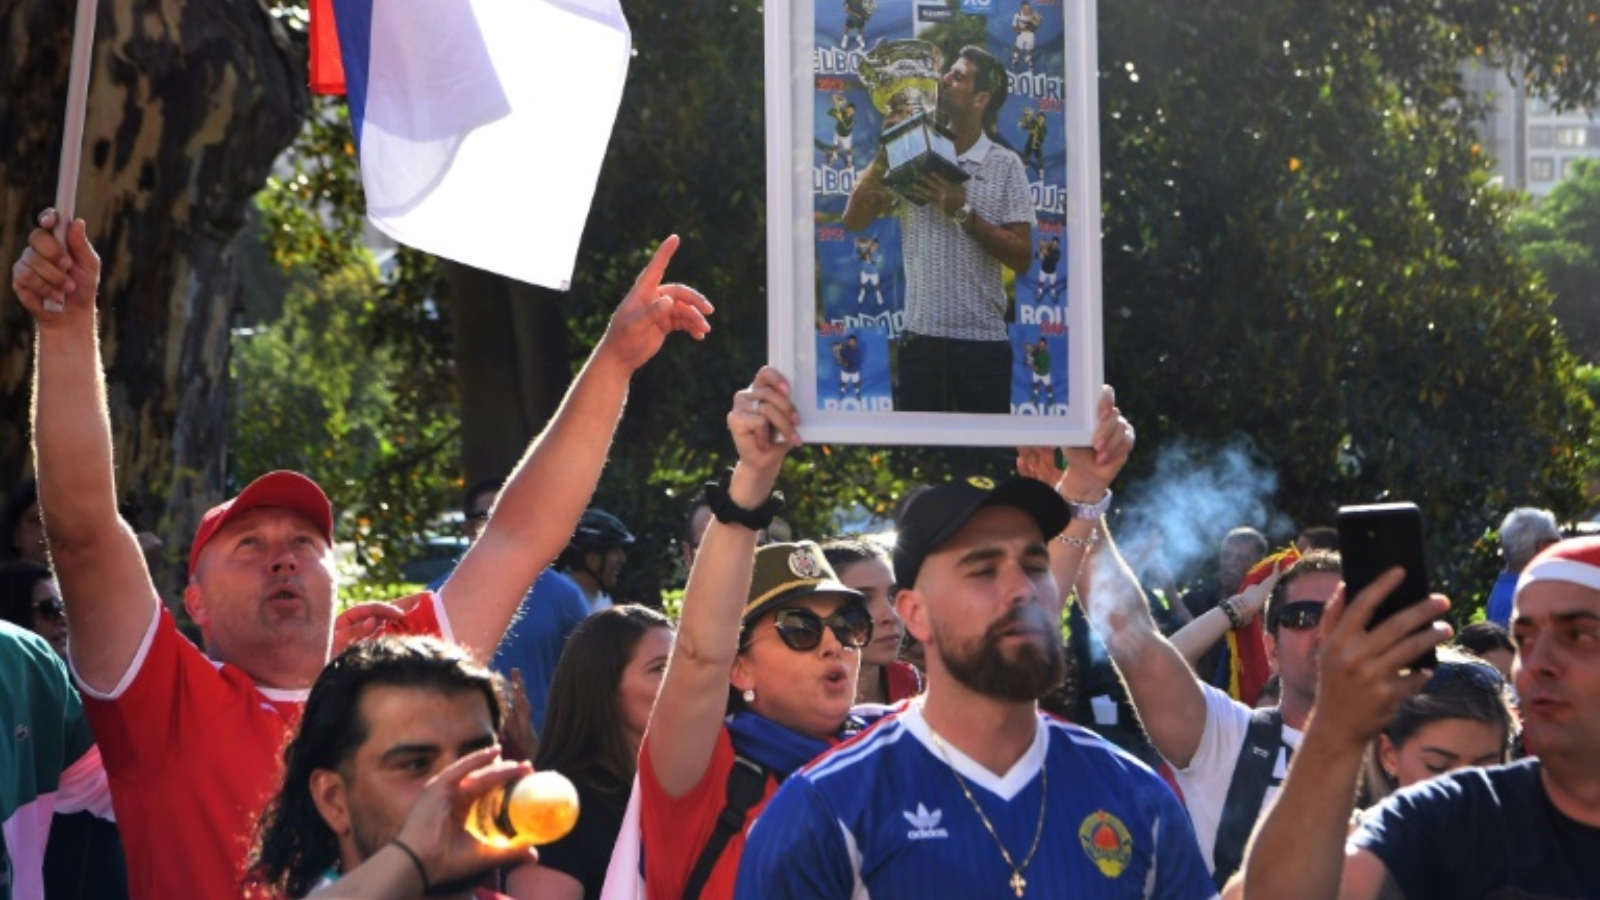 أشخاص من الجالية الصربية في أستراليا يتظاهرون خارج مكان احتجاز نوفاك ديوكوفيتش في ملبورن